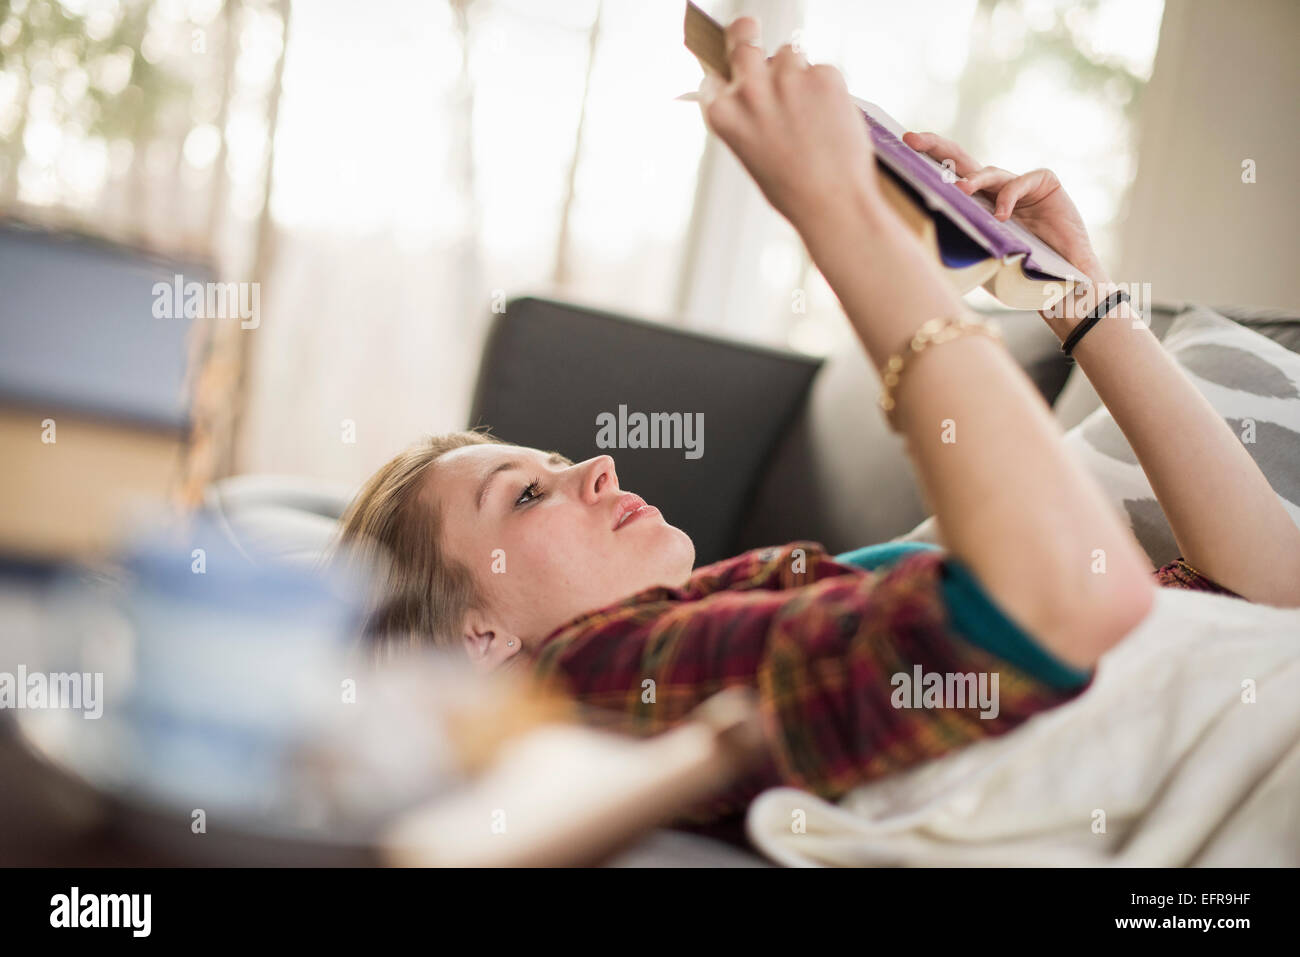 Junge Frau auf einem Sofa liegend ein Buch lesen. Stockfoto